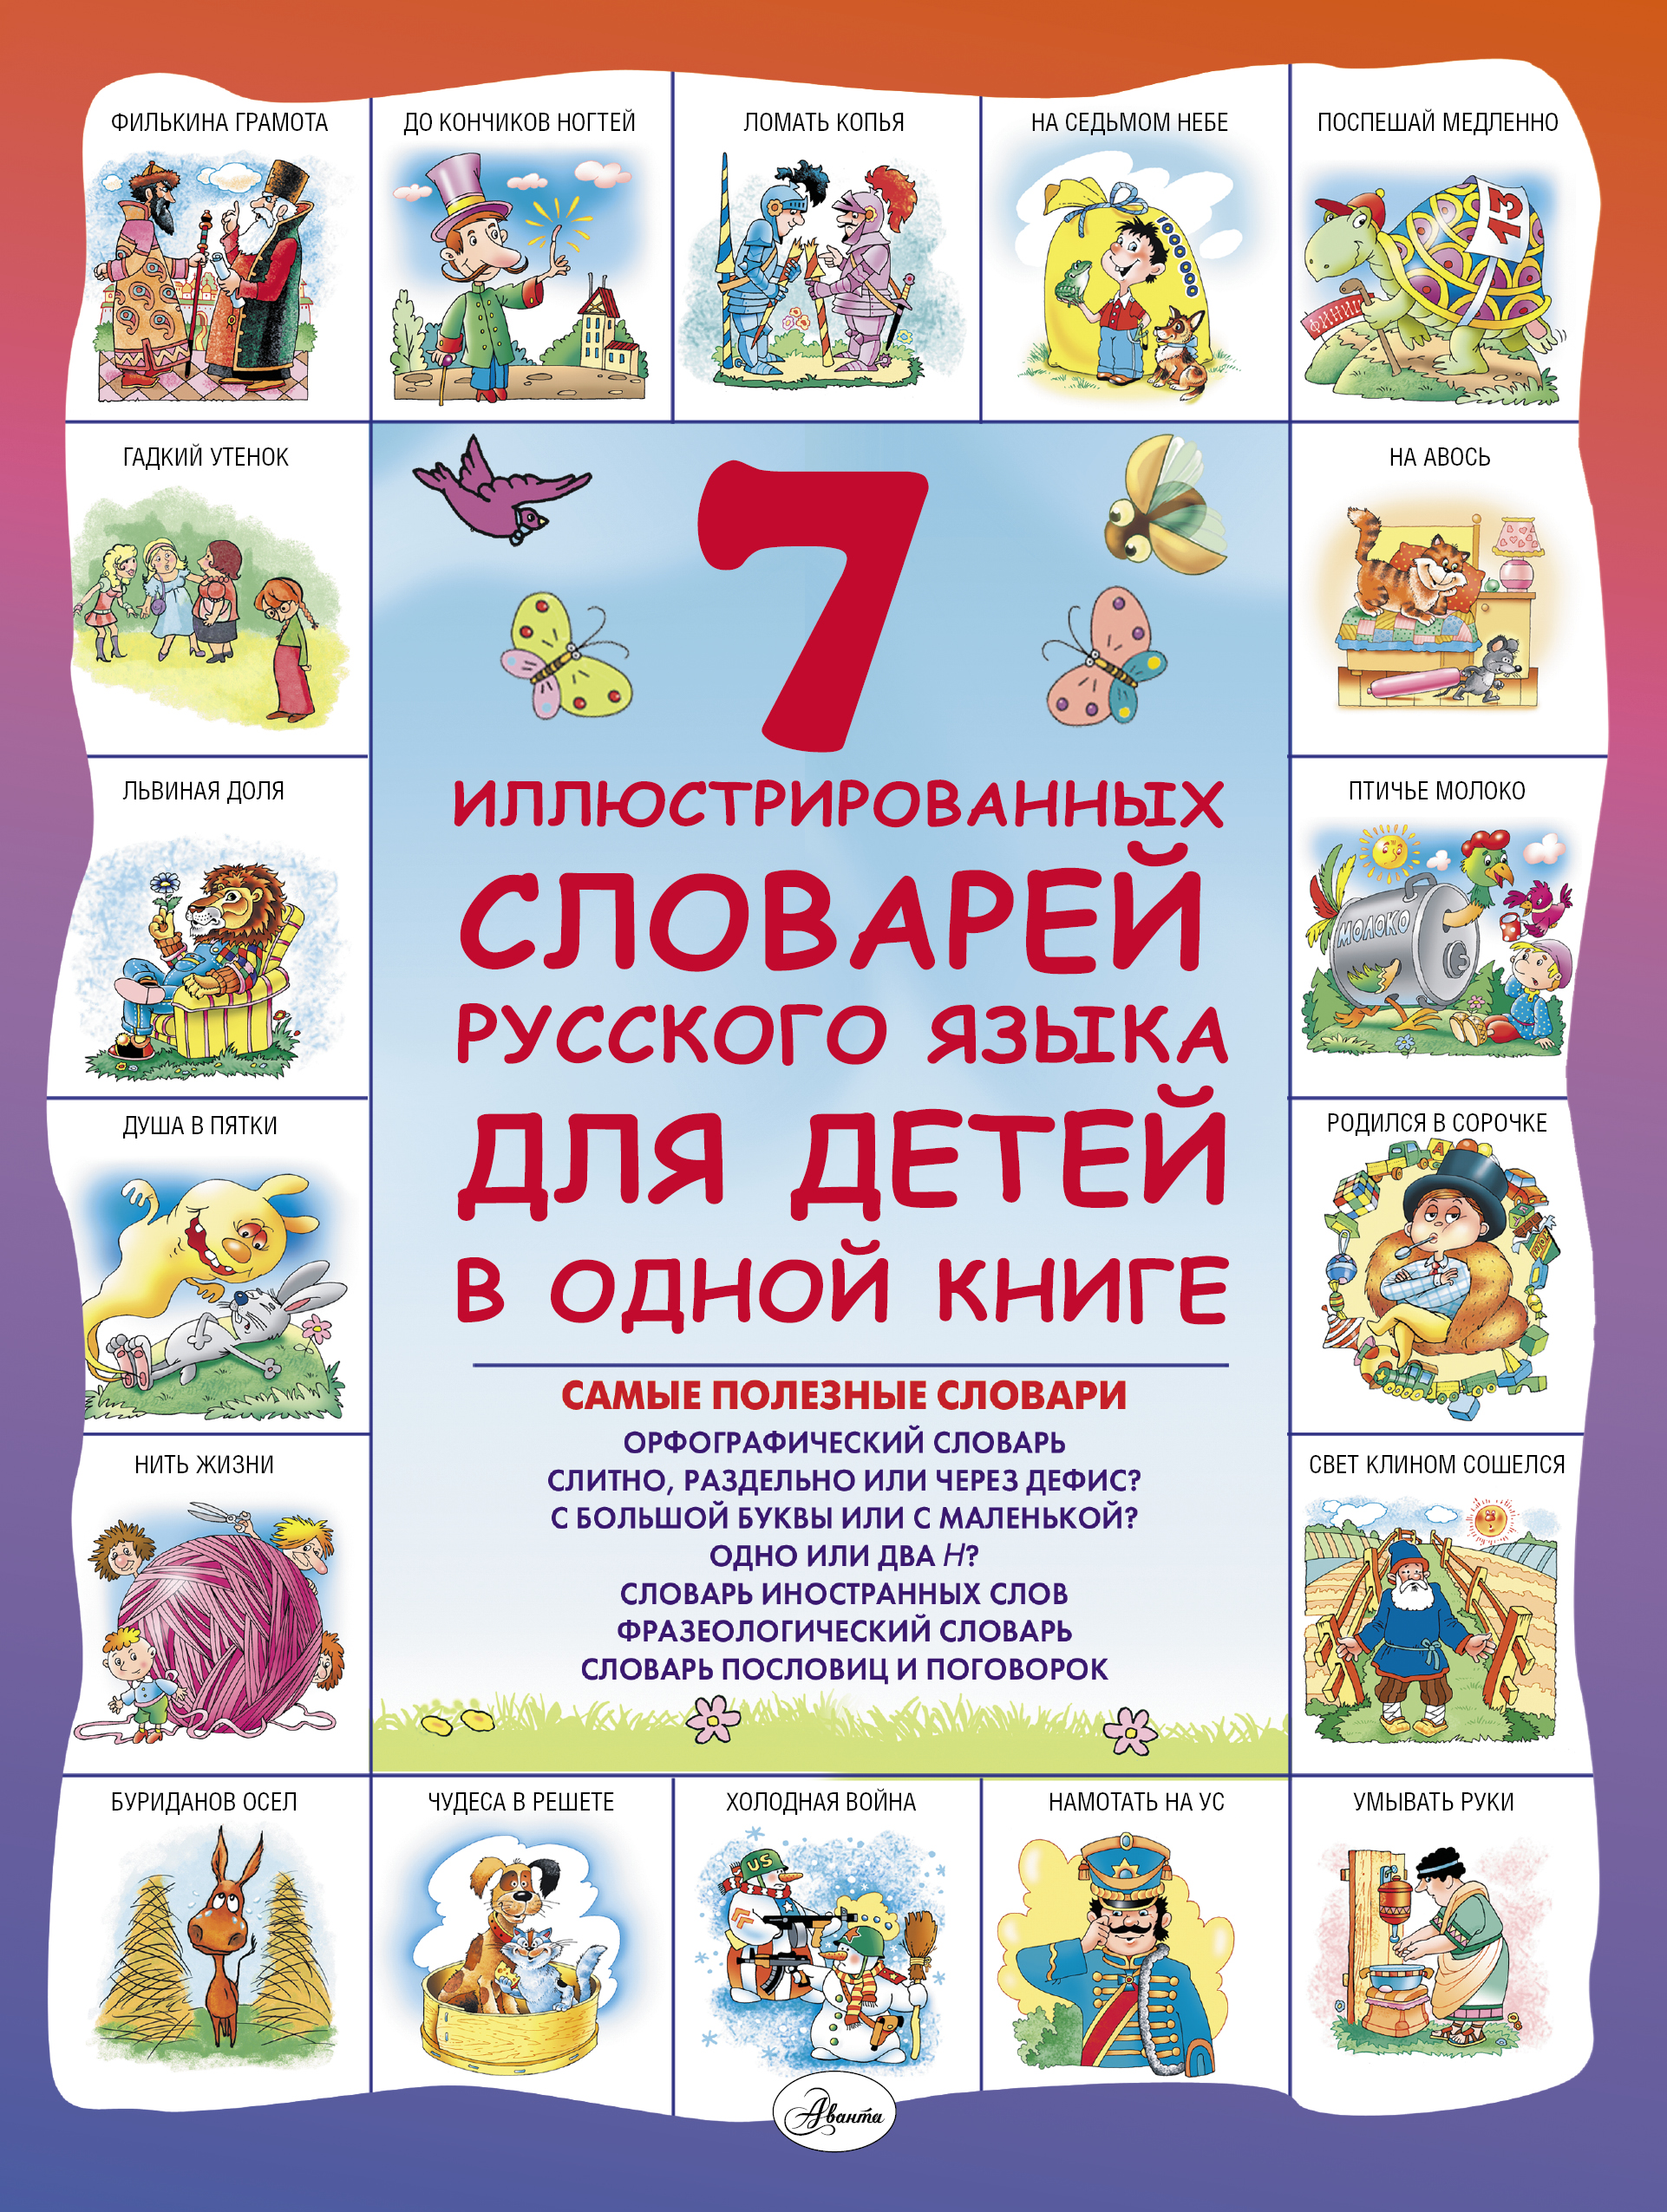 Недогонов Дмитрий Владимирович 7 иллюстрированных словарей русского языка для детей в одной книге - страница 0